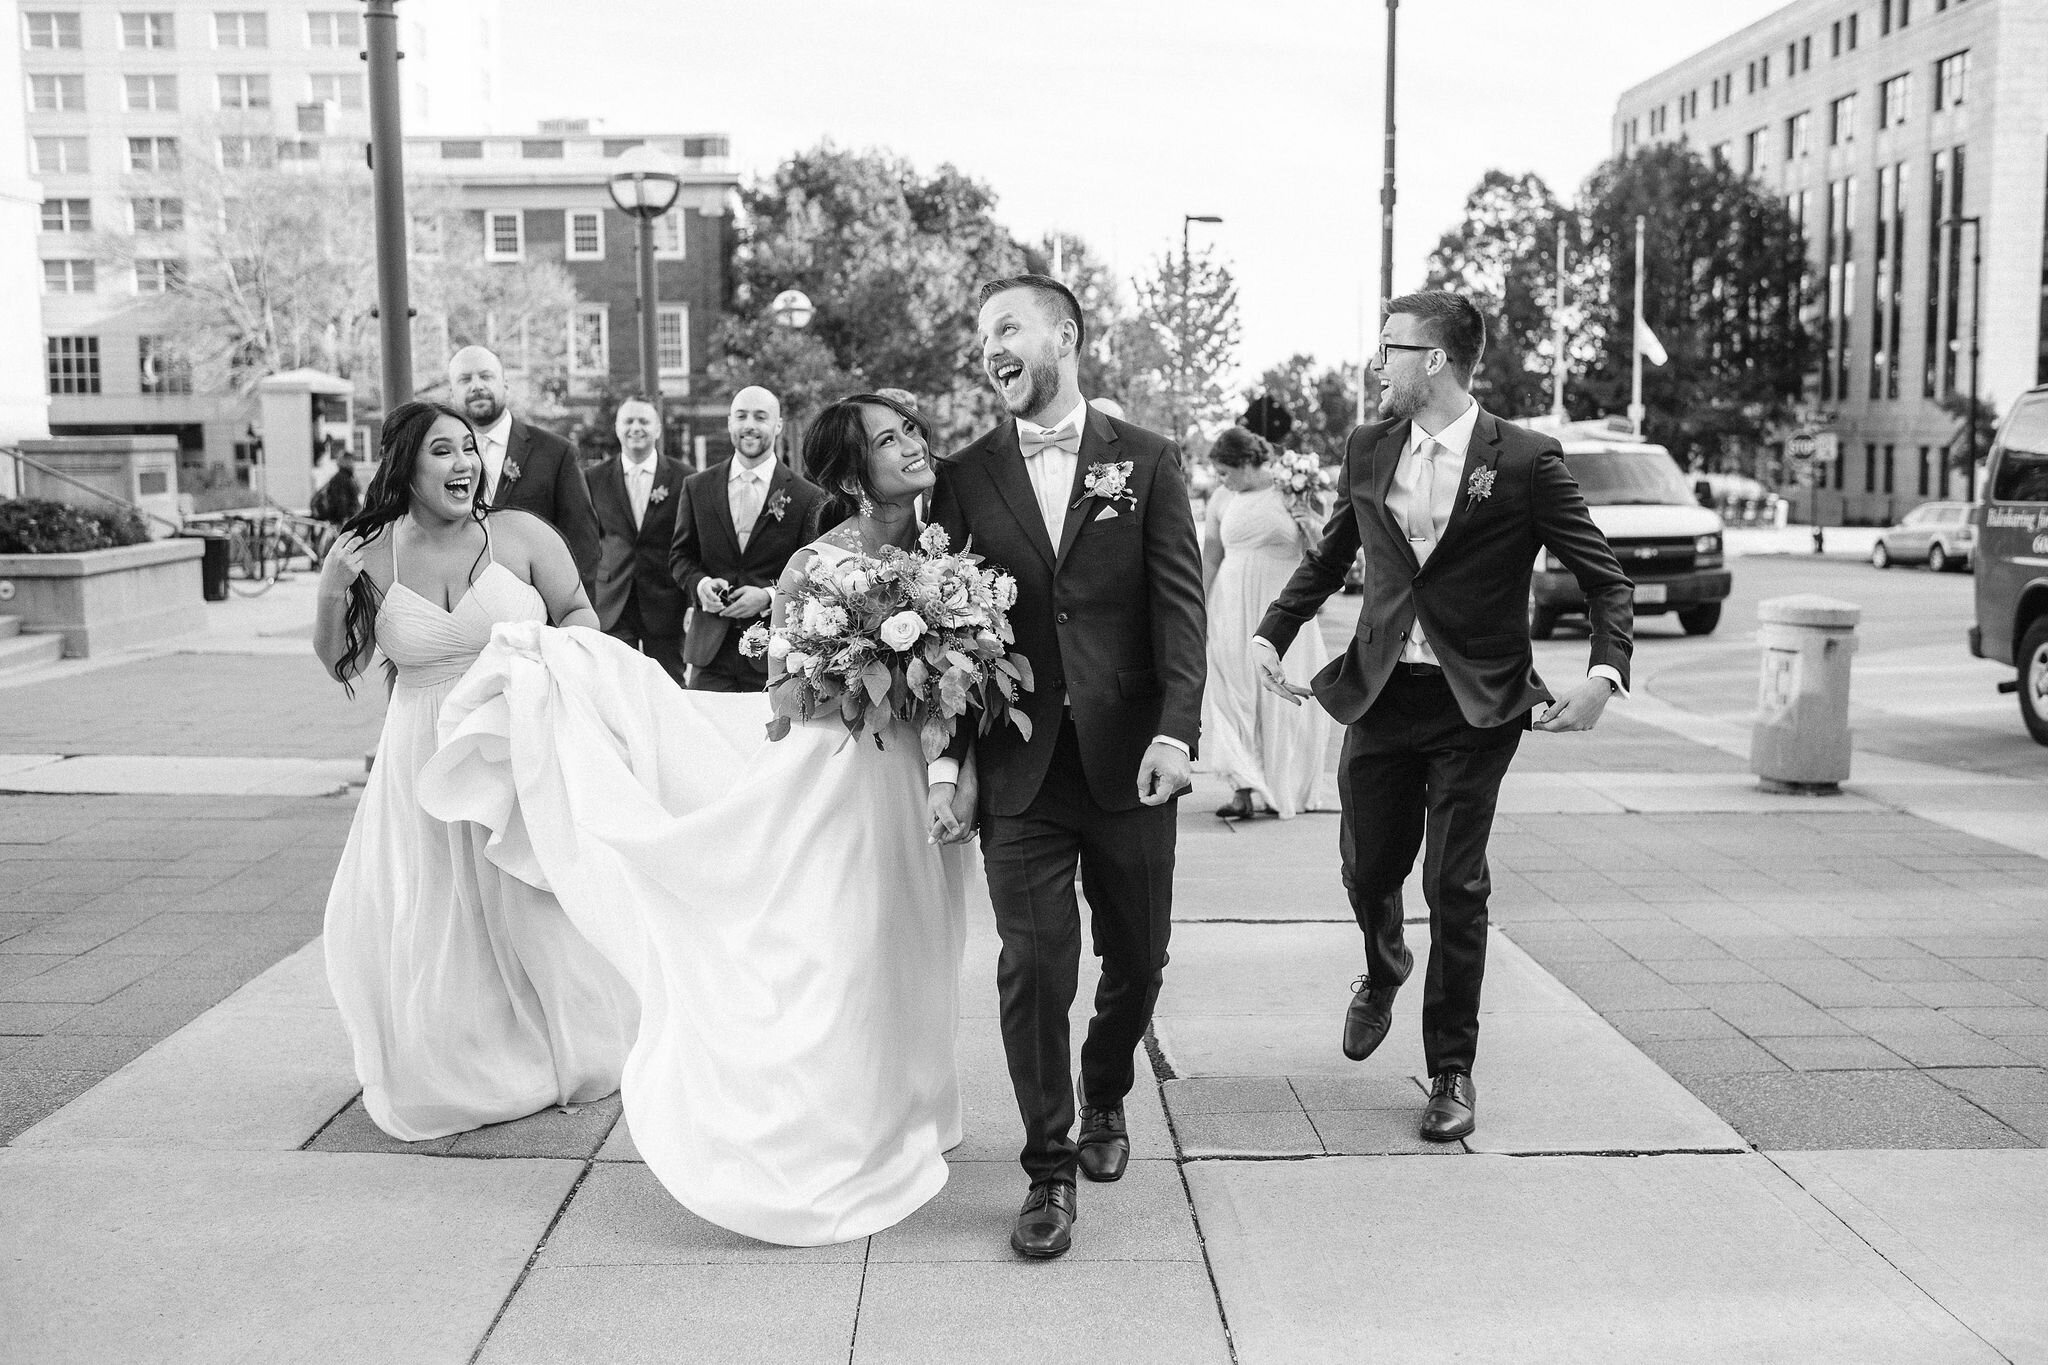 Wedding party walking down the sidewalk